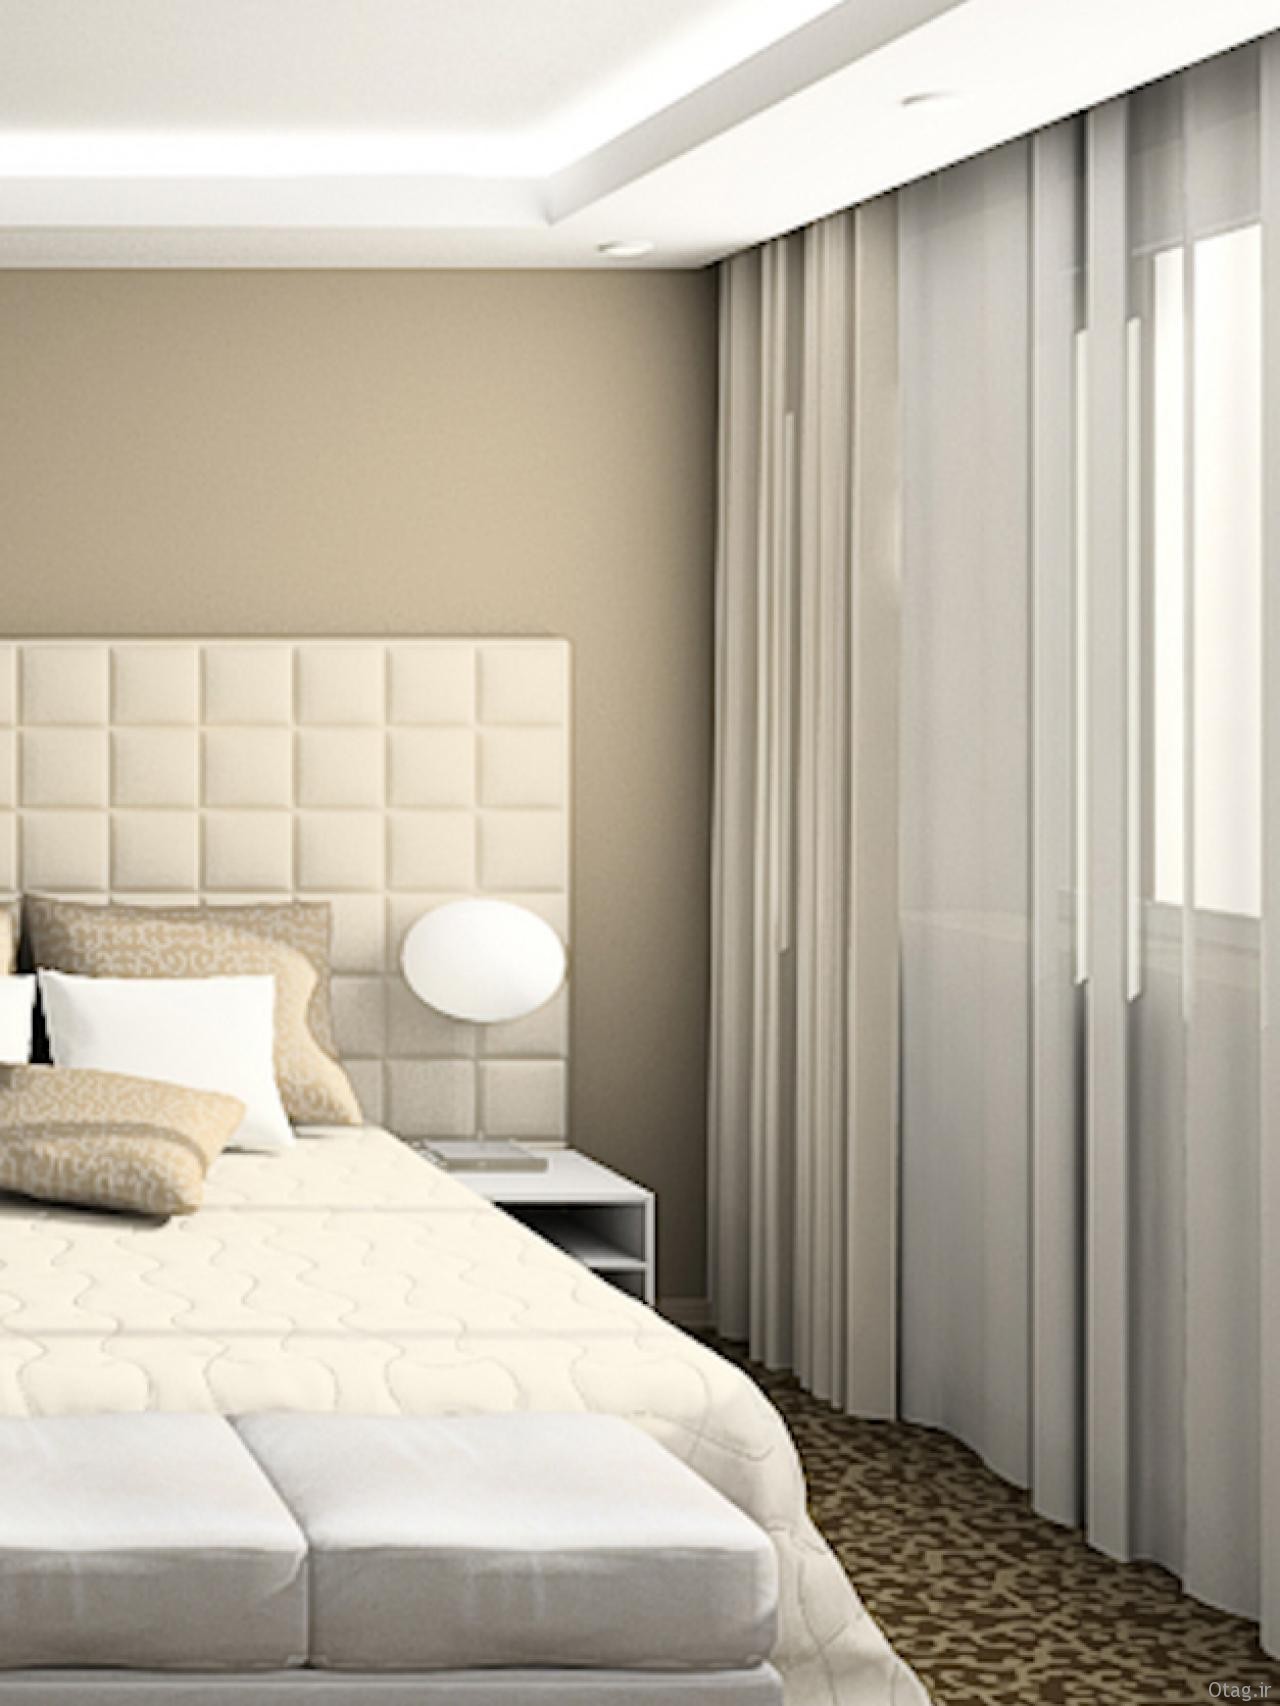 جدیدترین مدل های پرده اتاق خواب با طرح های گوناگون